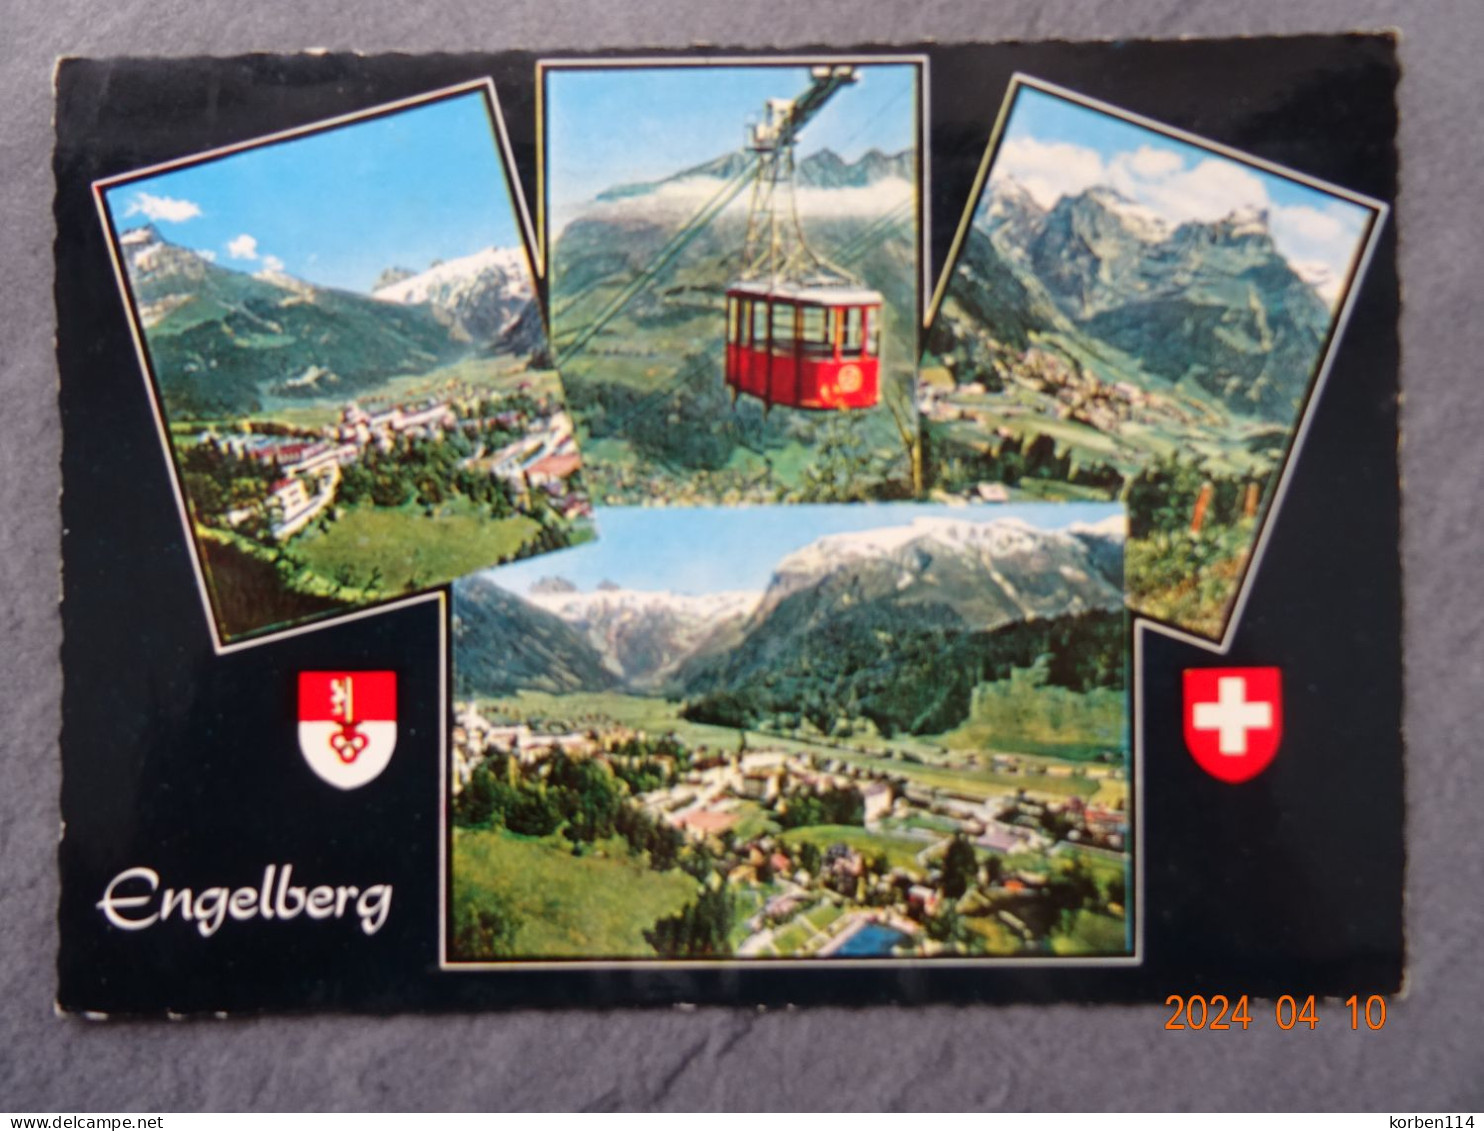 ENGELBERG - Engelberg